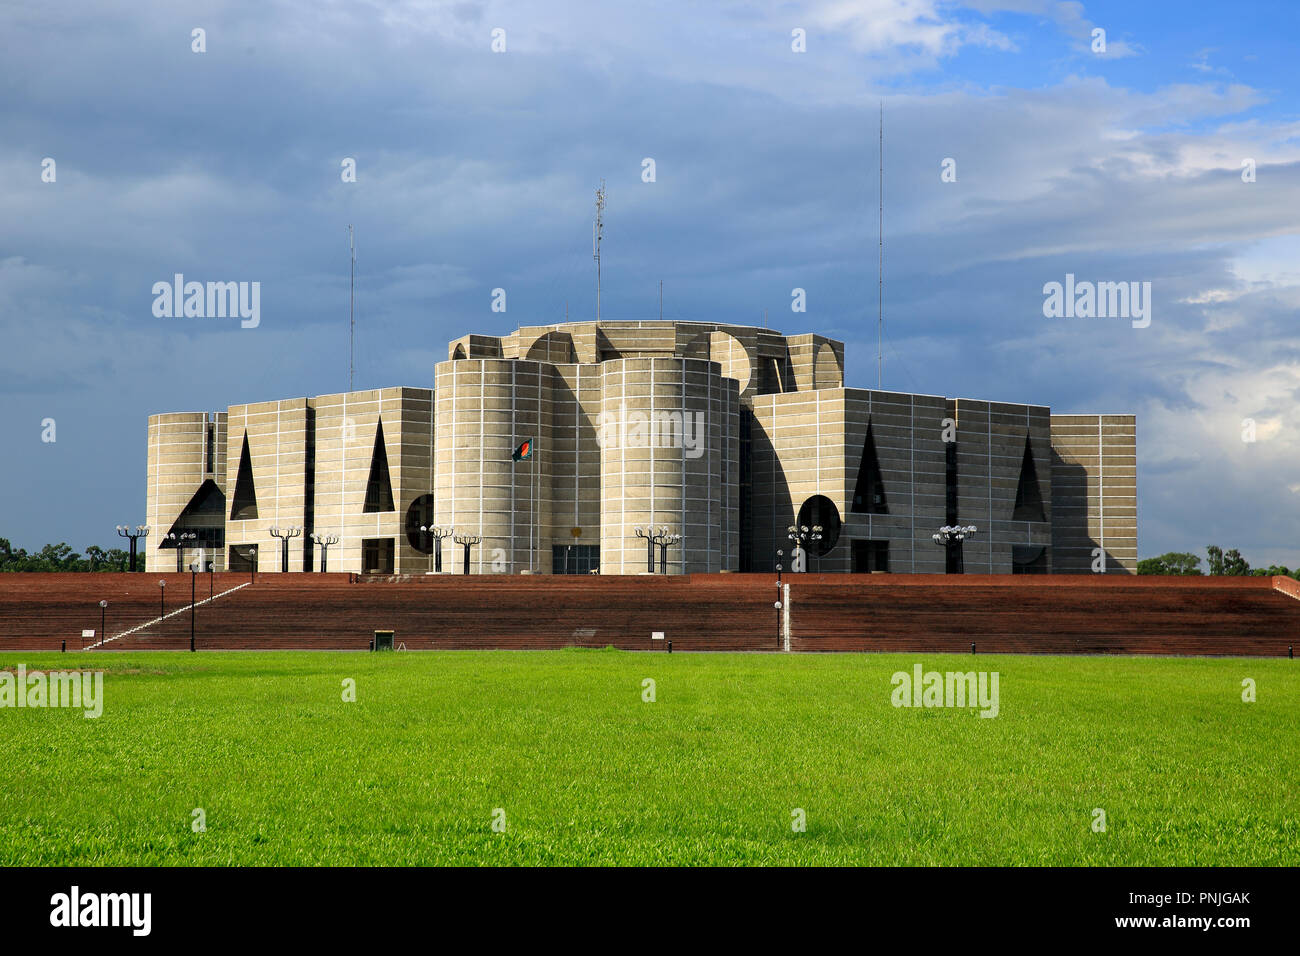 L'Assemblea nazionale edificio del Bangladesh o Jatiyo Sangsad Bhaban è considerato uno dei migliori esempi di architettura moderna. Progettato Foto Stock